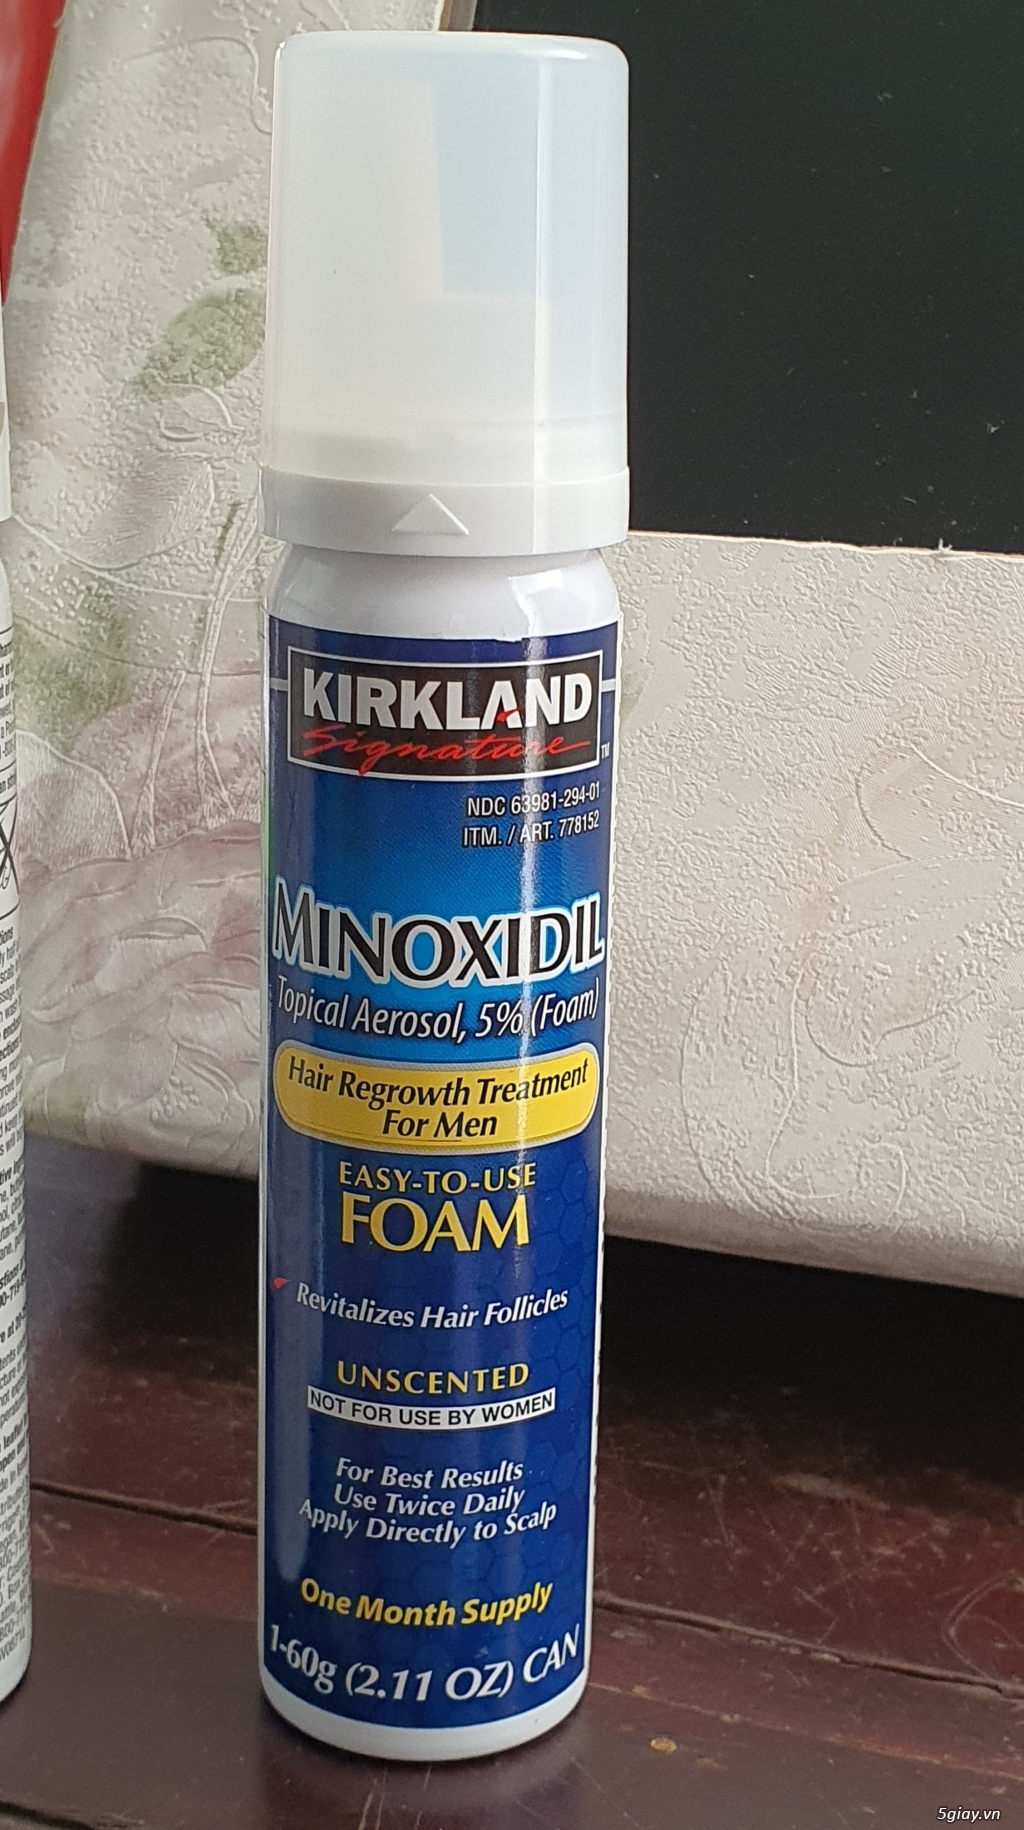 MinoxidiL , 5% dạng Foam , xách tay từ Mỹ , dư xài cần bán